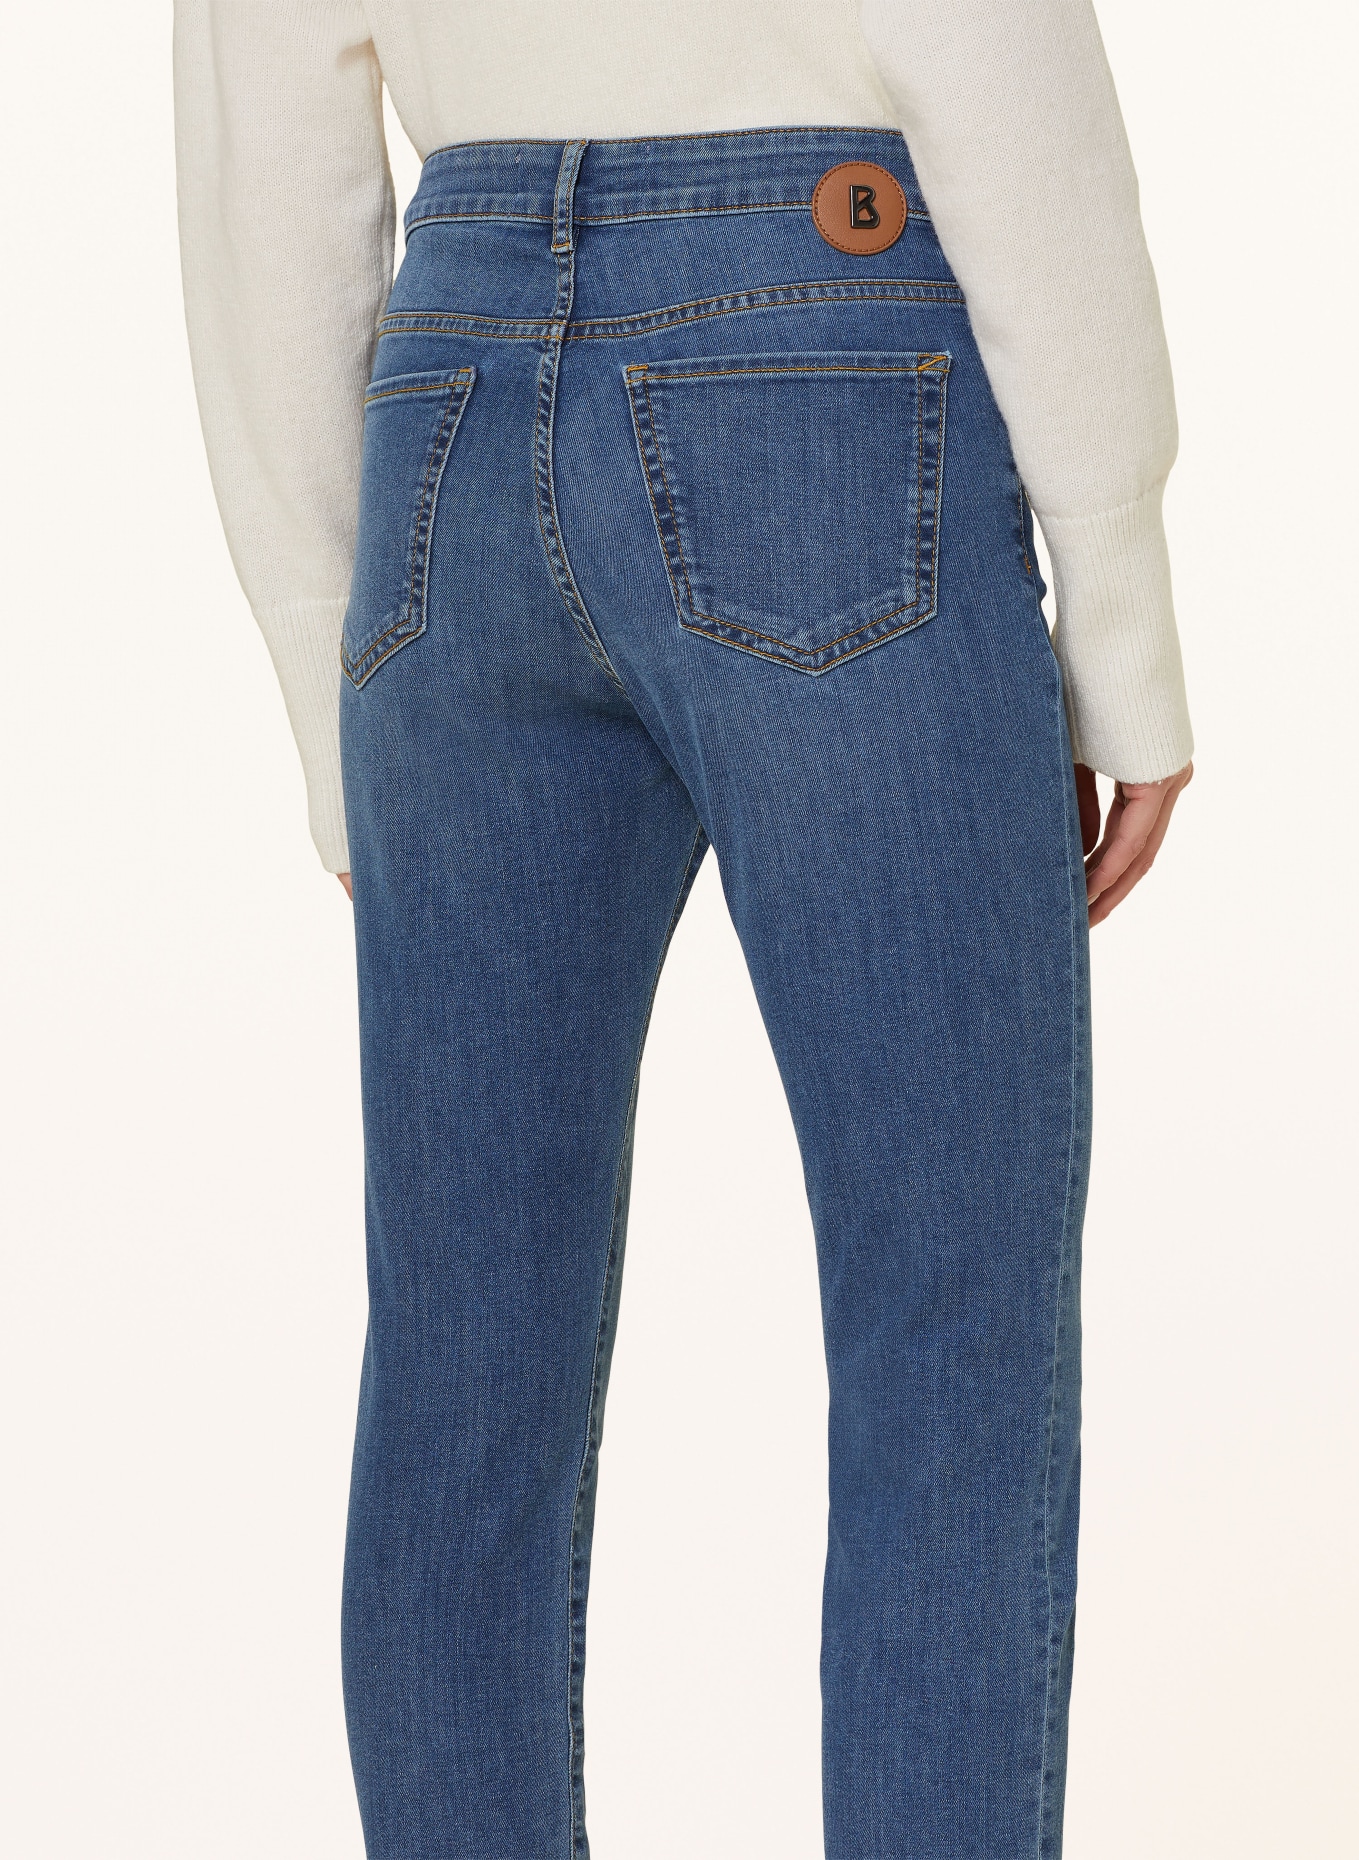 BOGNER 7/8 jeans JULIE-C, Color: 421 denim light mid (Image 5)